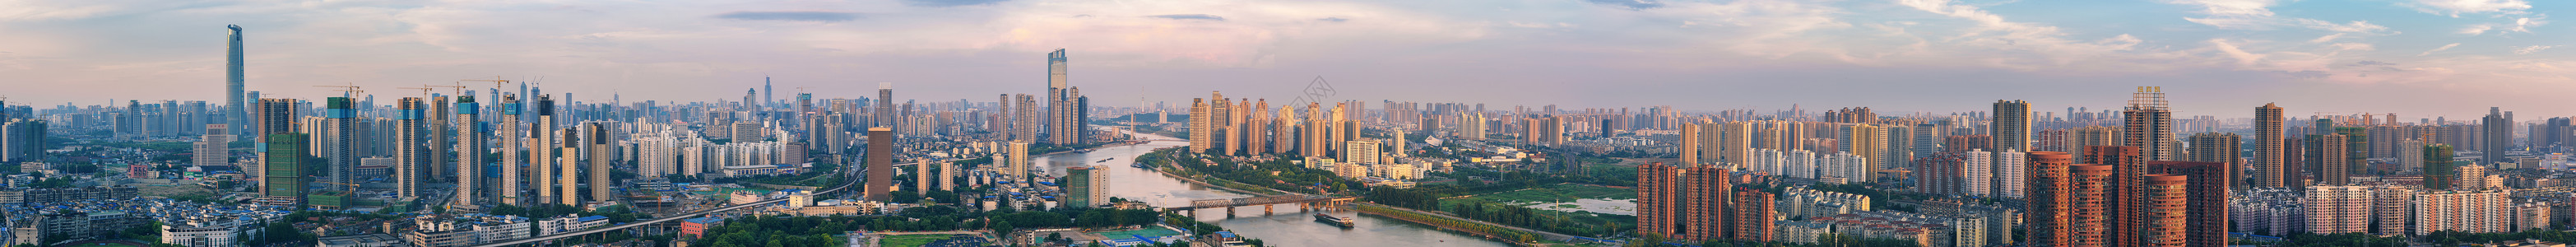 武汉城市风光全景接片图片